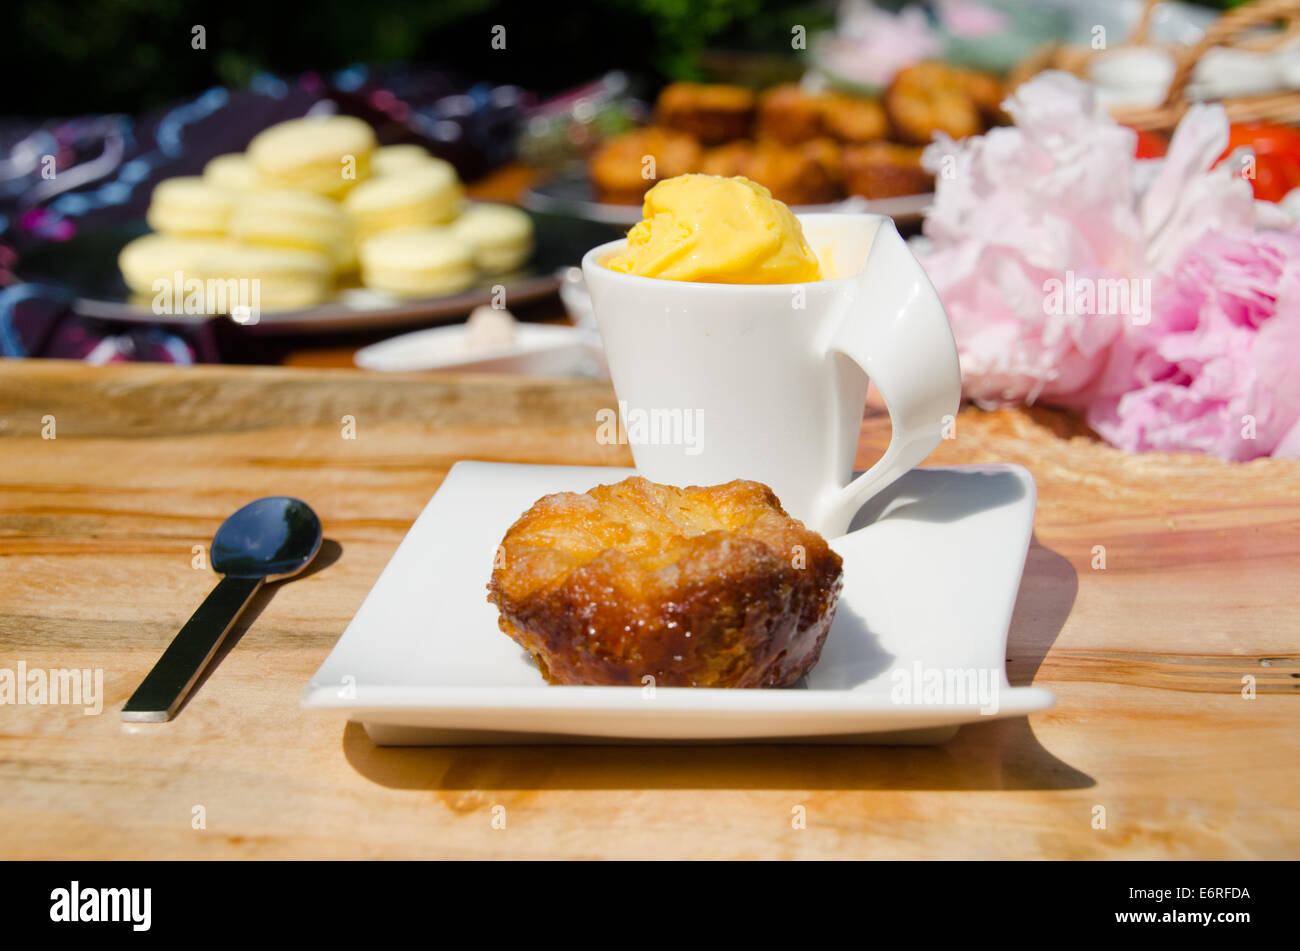 Sur une plaque à pâtisserie avec une tasse de sorbet au citron, avec plus de pâtisseries comme les macarons et muffins dans l'arrière-plan de la scène de pique-nique Banque D'Images